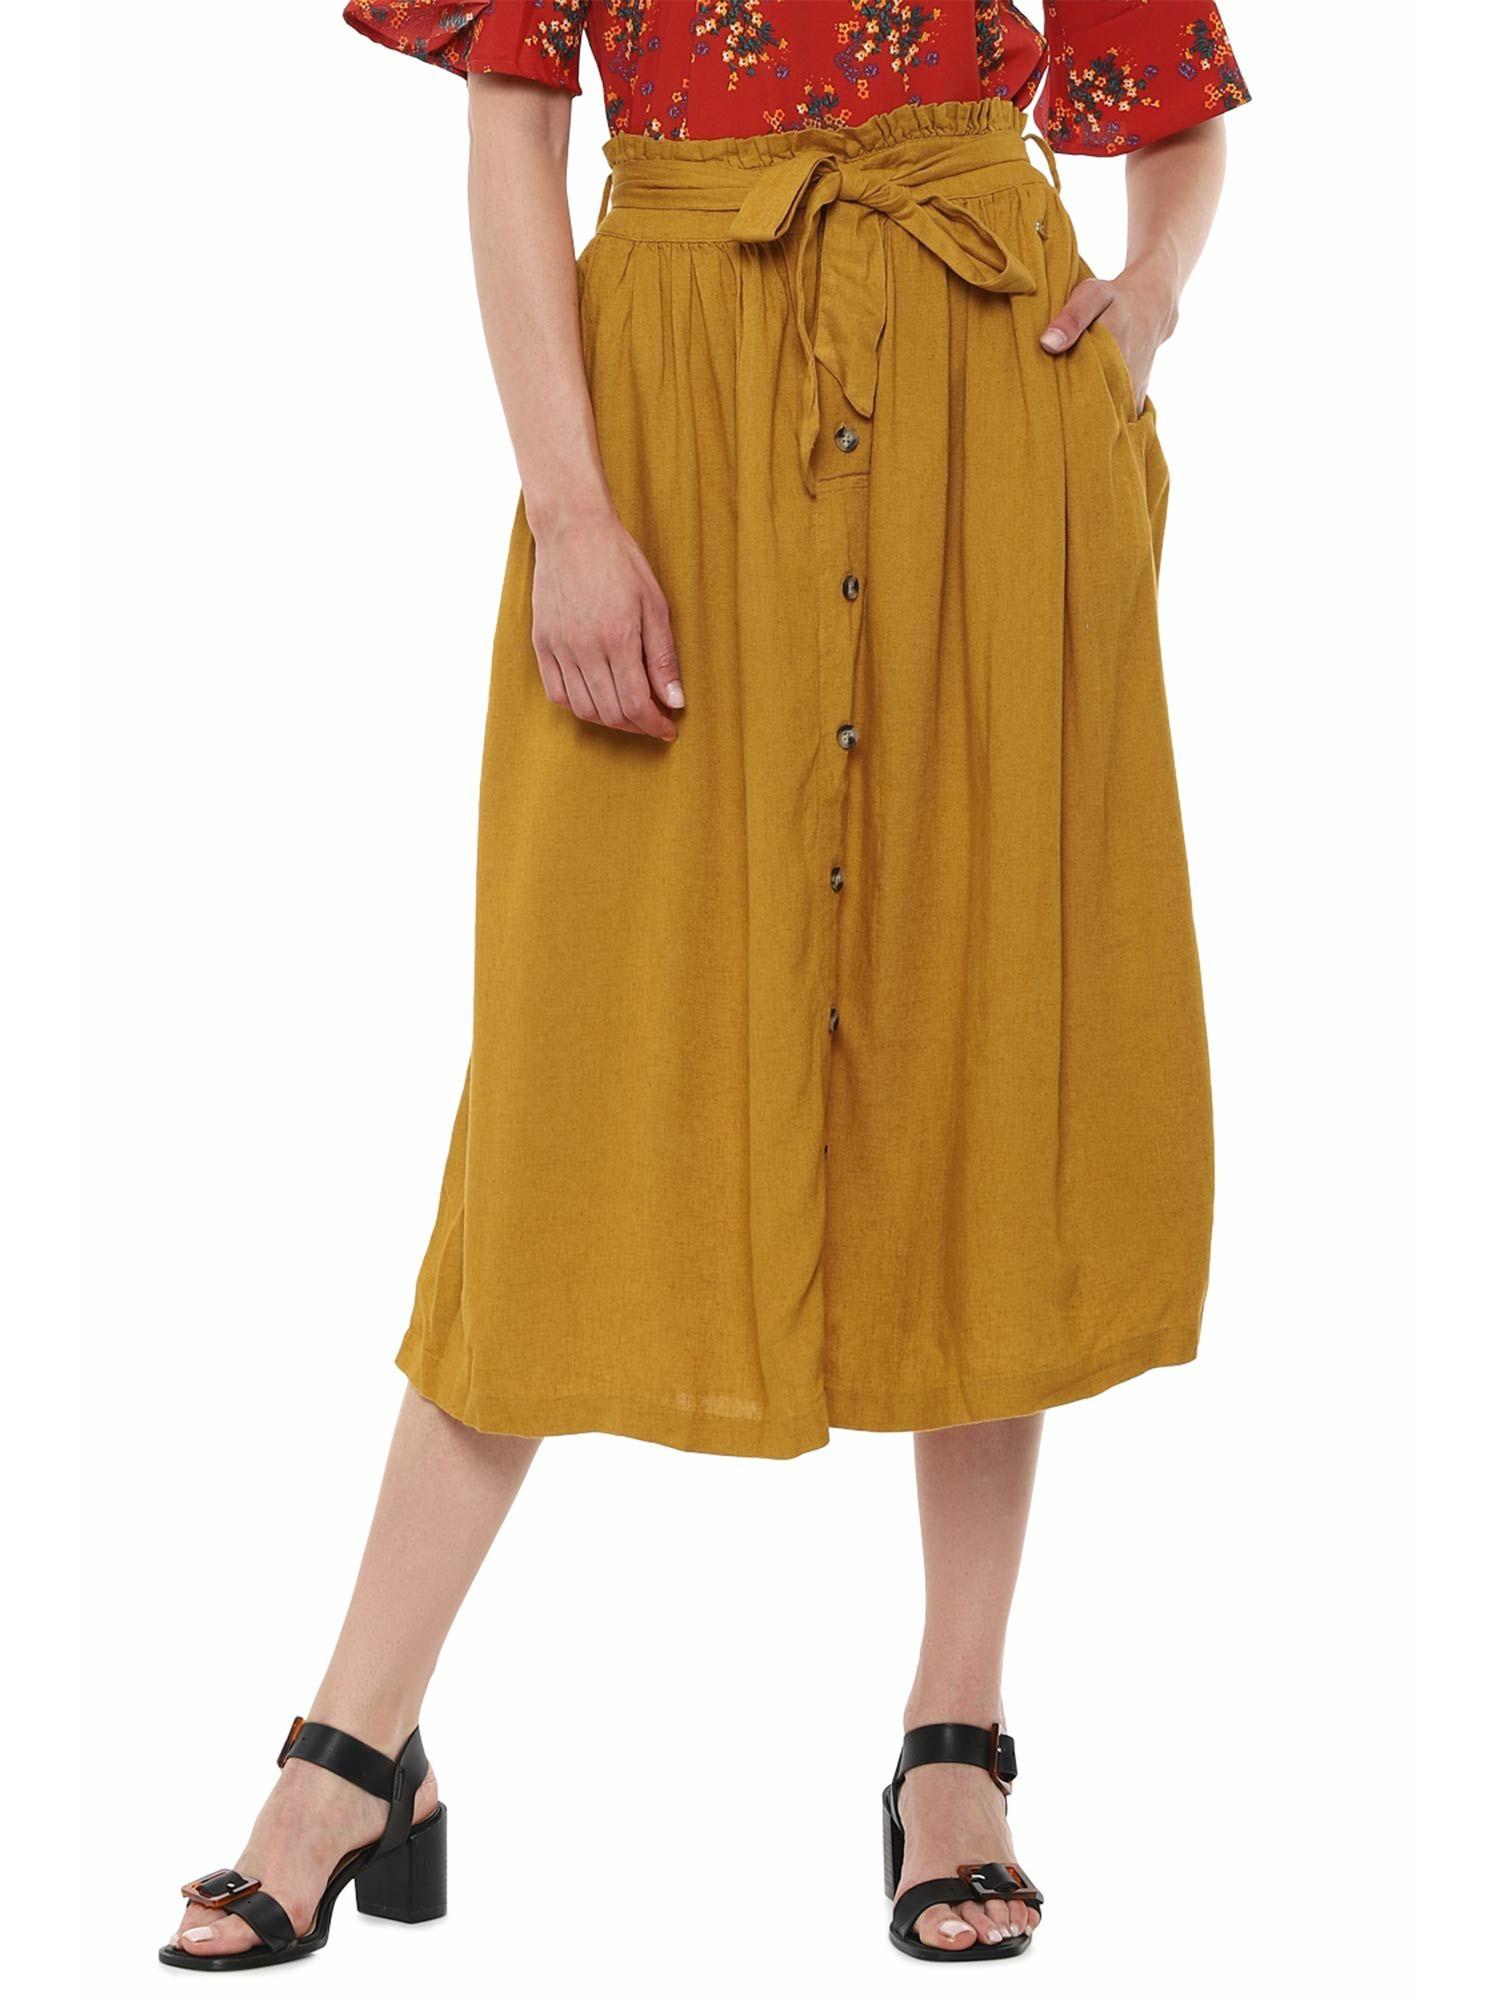 yellow-skirt